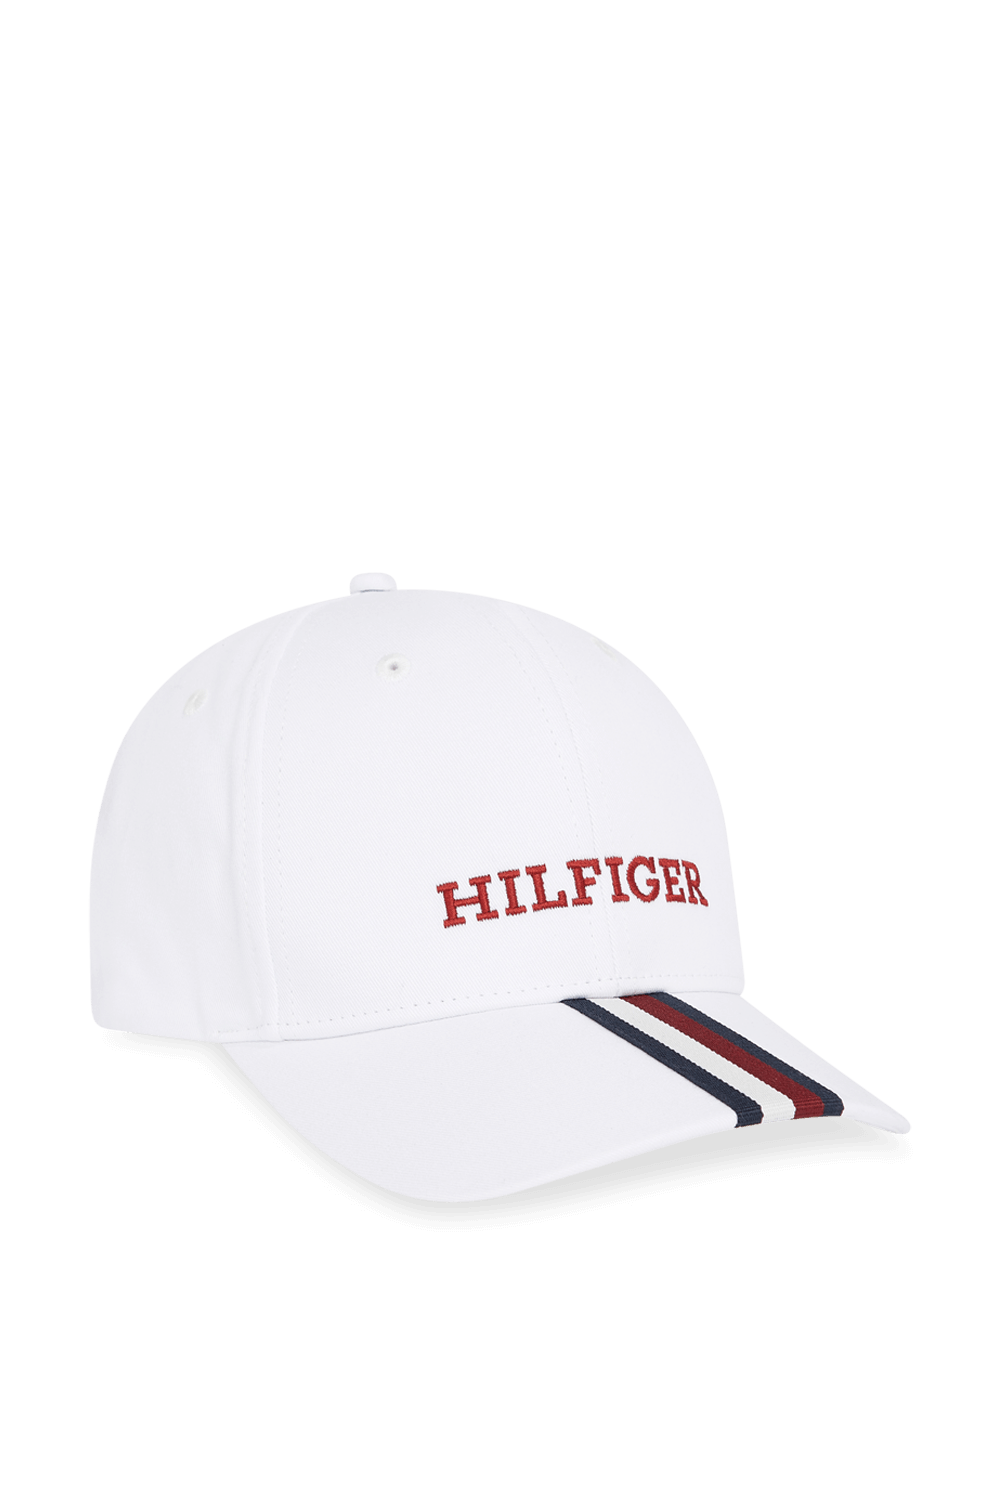 כובע מצחייה מכותנה אורגנית TOMMY HILFIGER KIDS